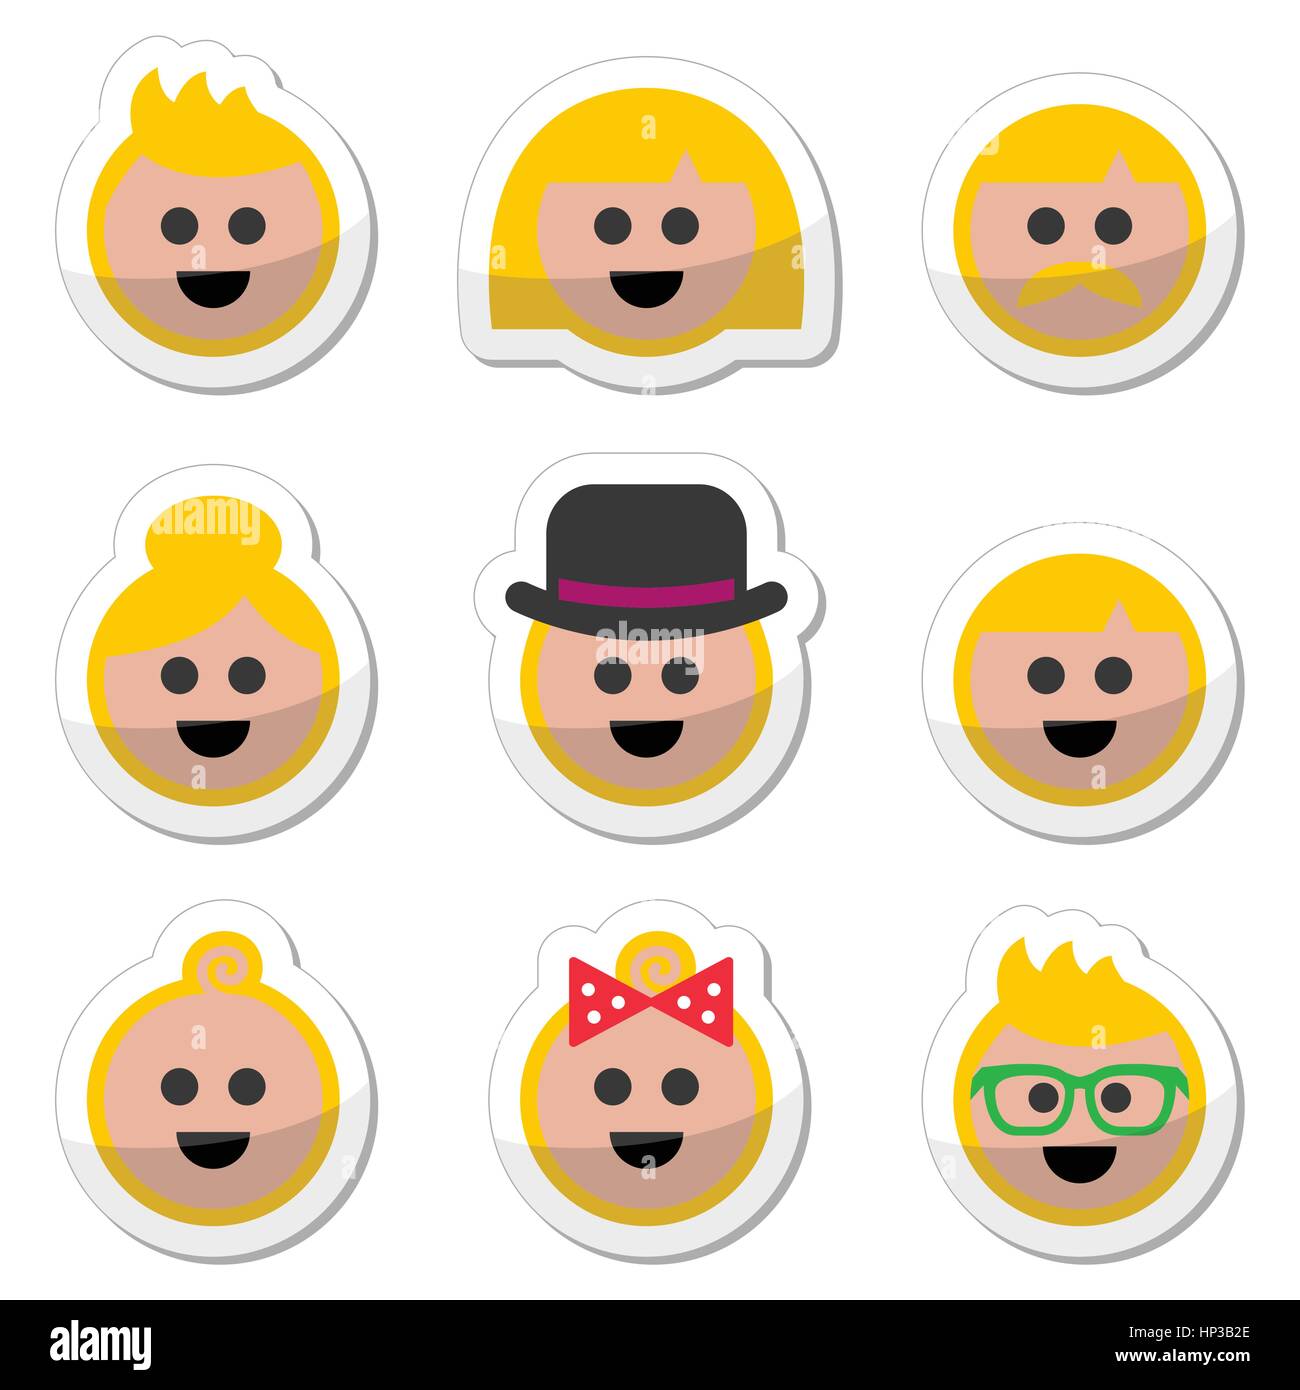 Les gens avec des cheveux blonds vector icons set.étiquettes vecteur ensemble de cheveux blonds gens isolated on white Illustration de Vecteur